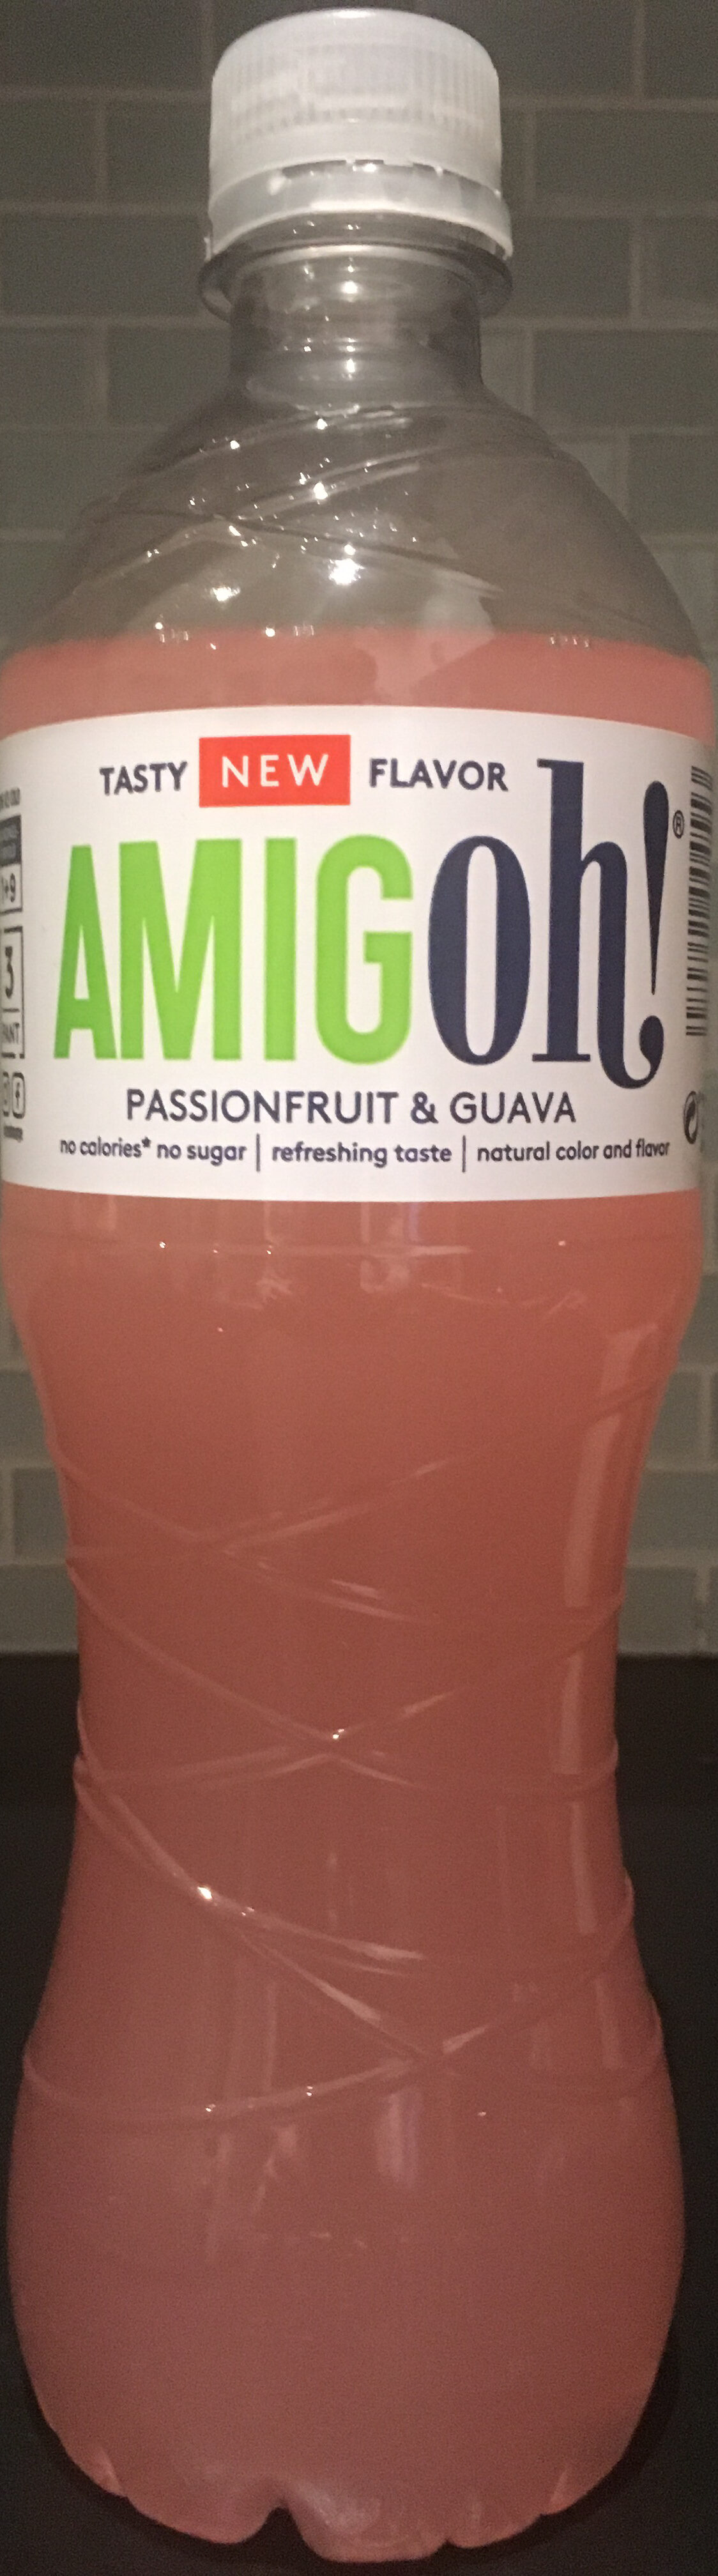 AmigOh! Passionfruit & Guava - Produkt